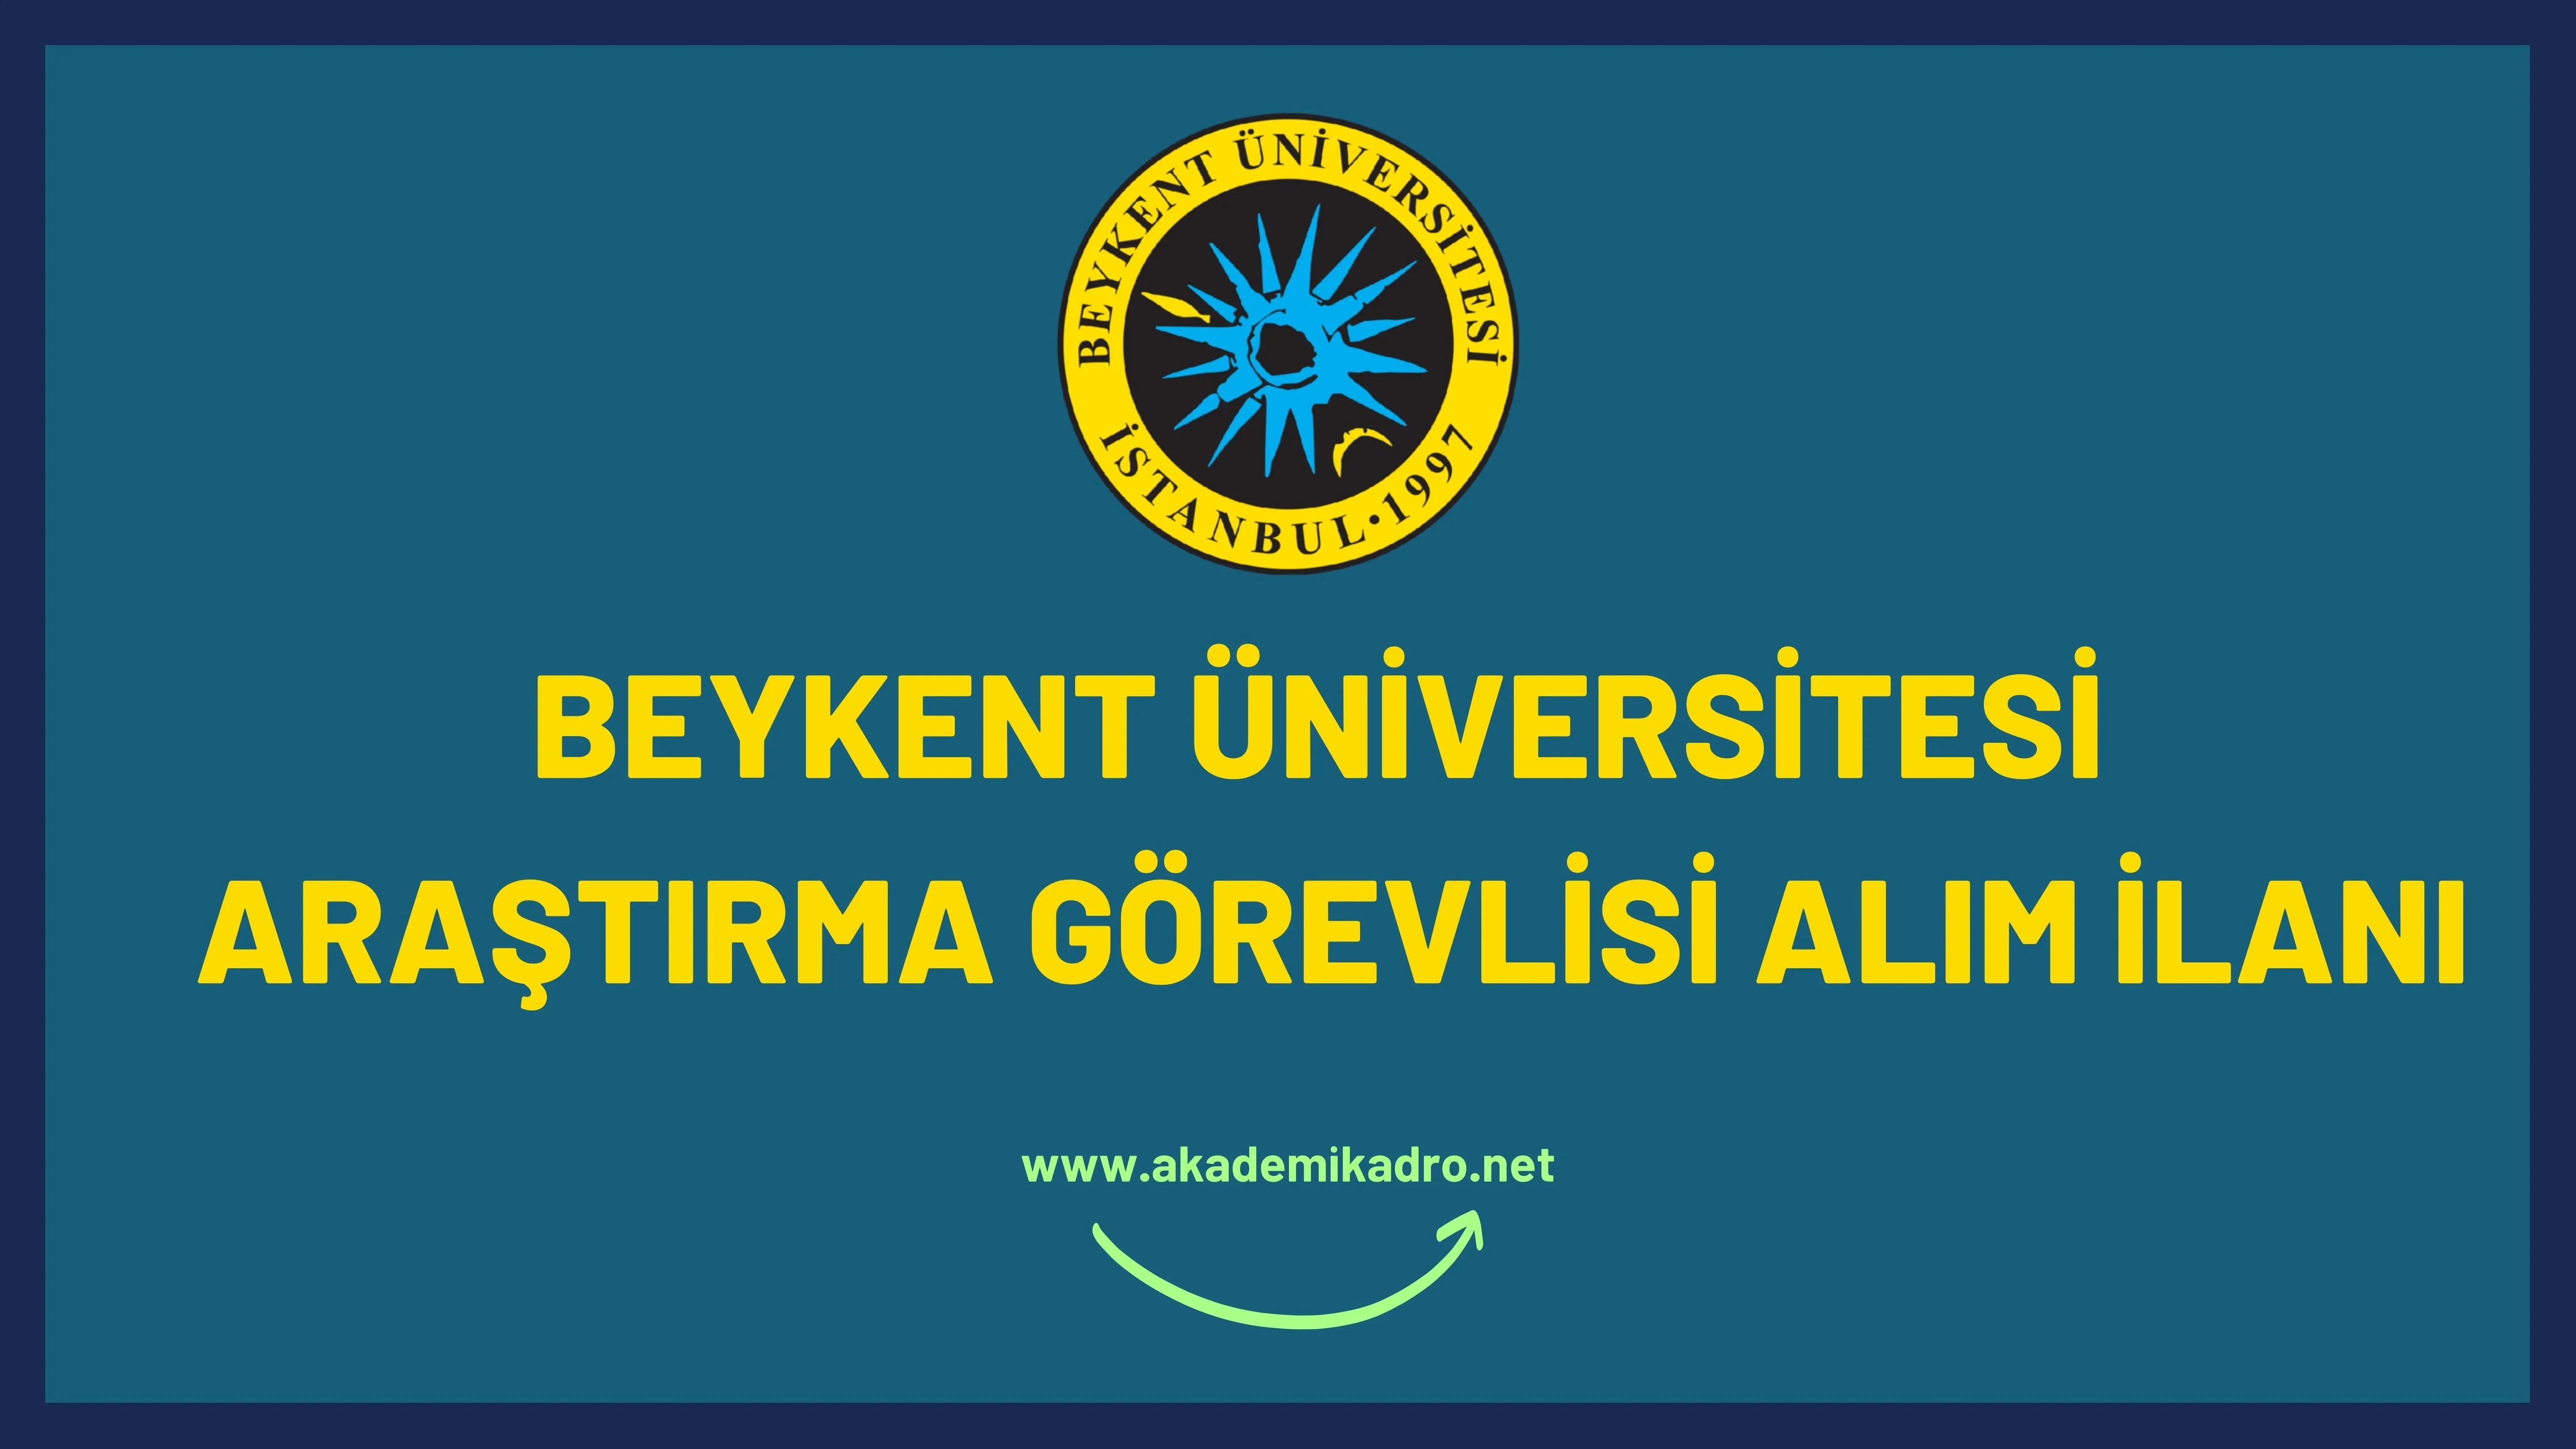 Beykent Üniversitesi 4 Araştırma görevlisi alacak. Son başvuru tarihi 27 Ocak 2023.